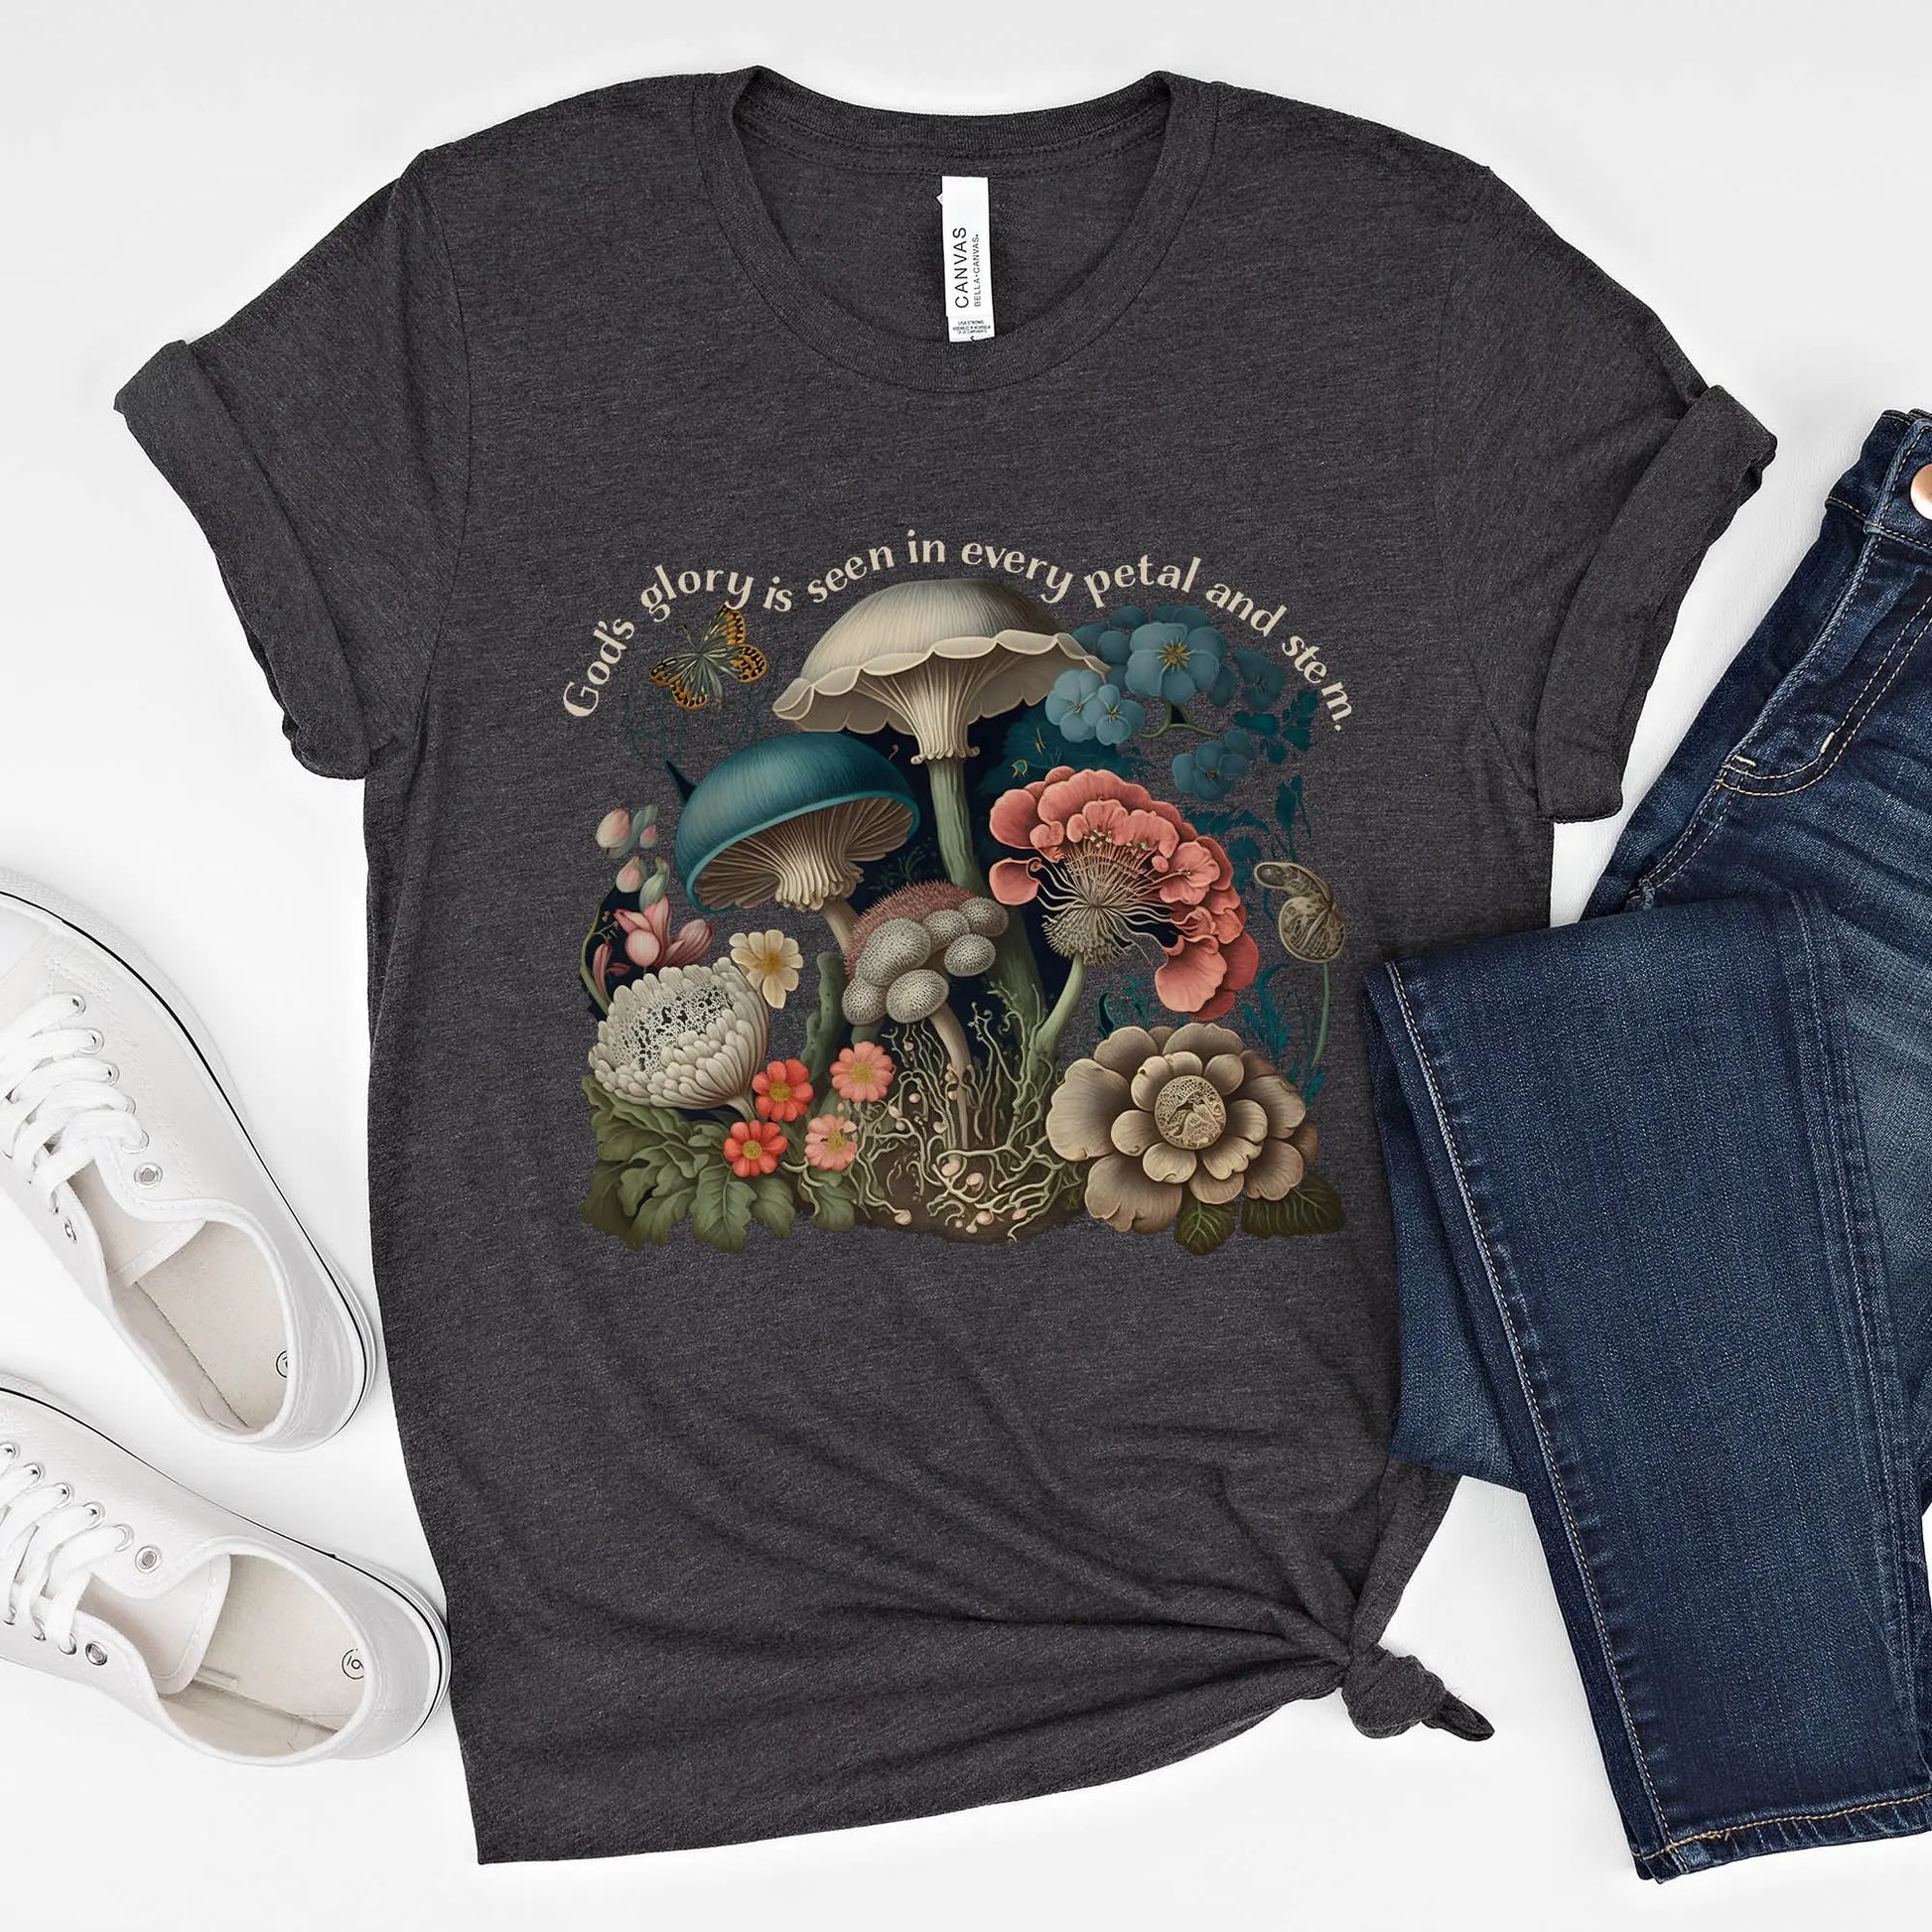 God's Glory Mushroom and Flowers Tshirt, Cottagecore Shirt, Mushroom Tshirt Amazing Faith Designs